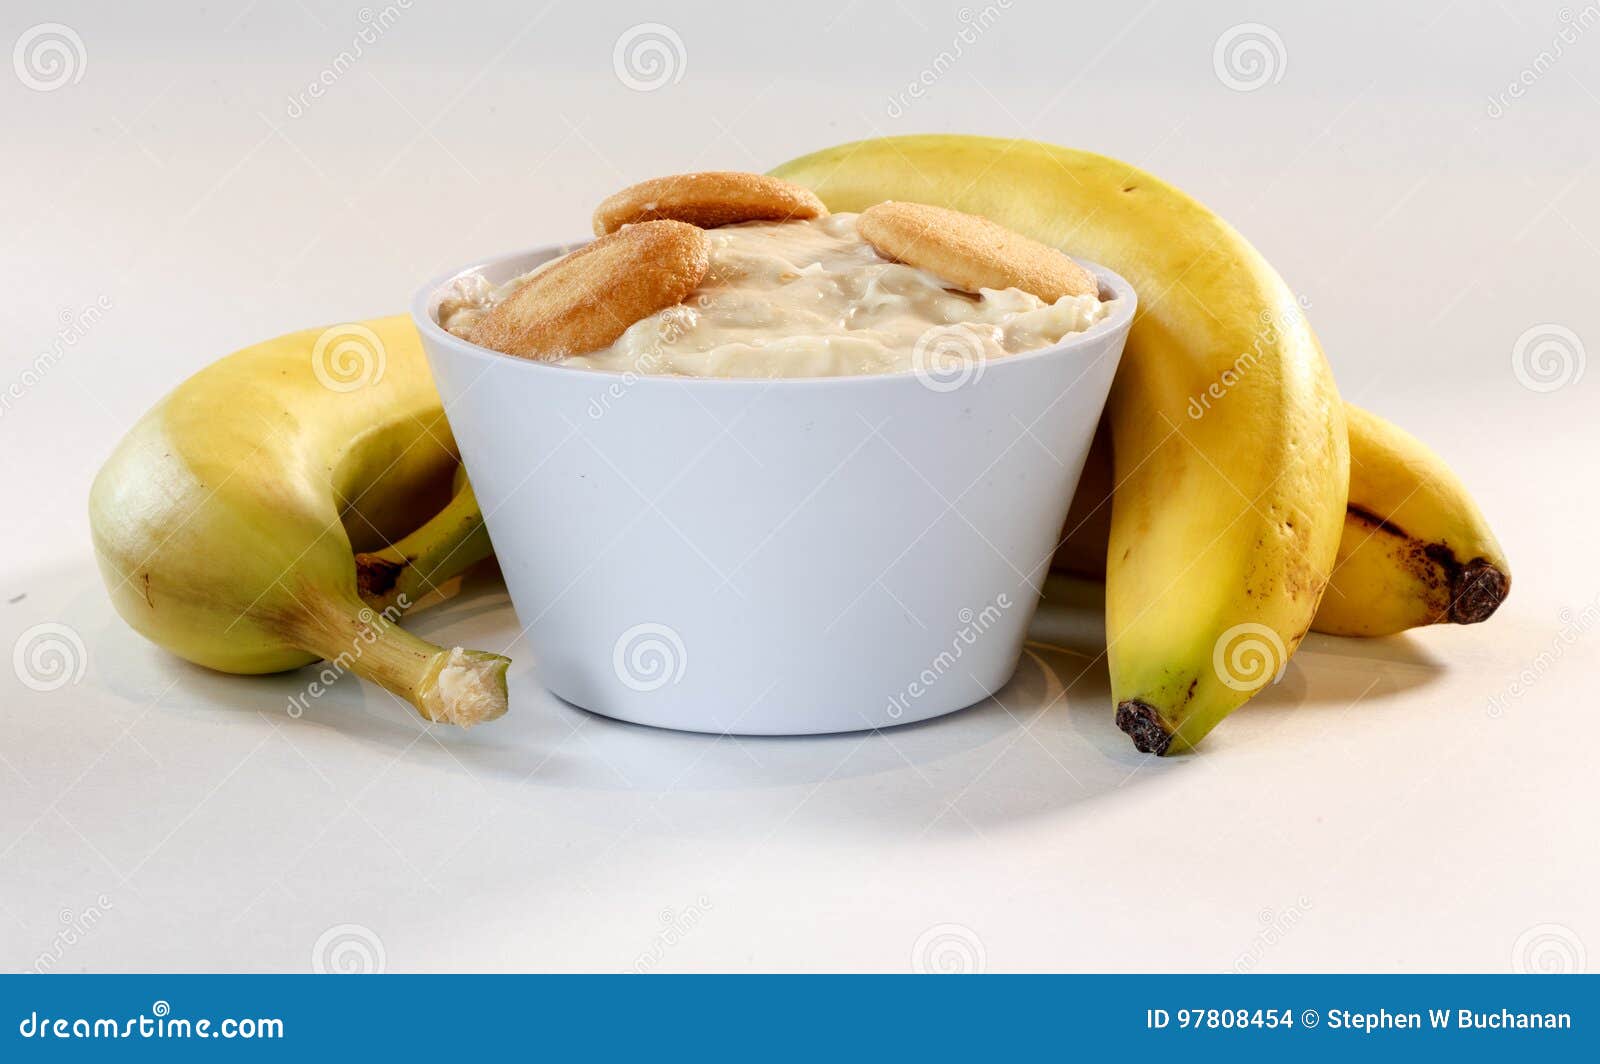 香蕉布丁冻糕-博登乳品-网赌正规平台网址